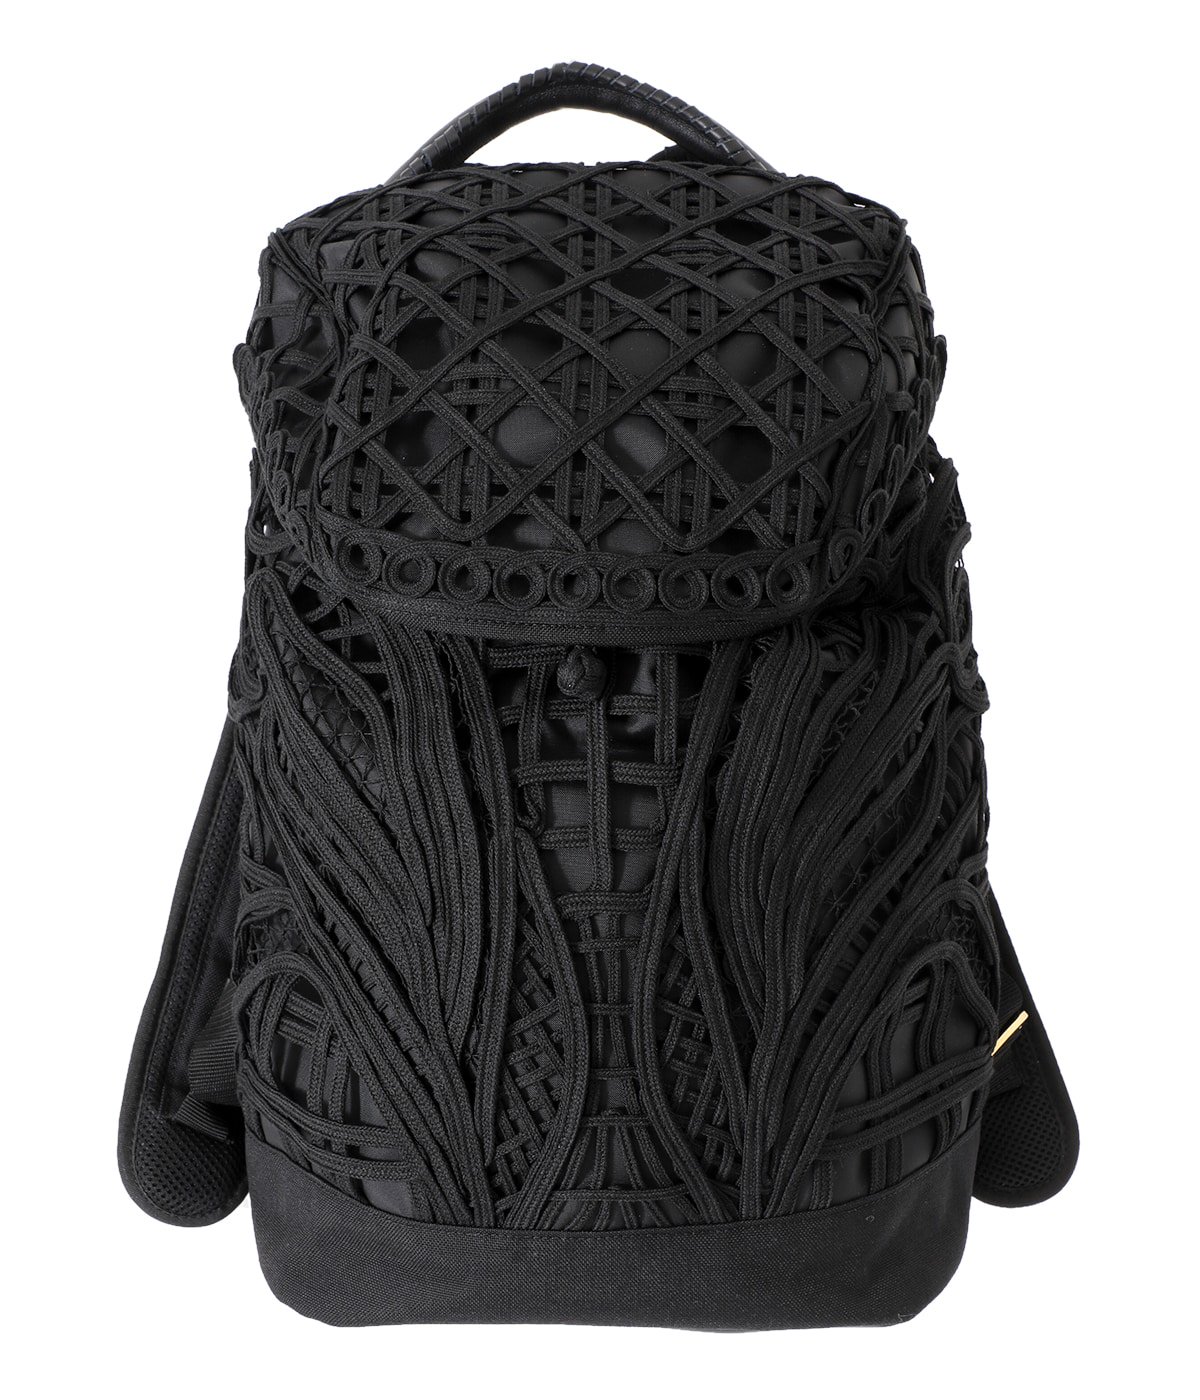 【レディース】Cording Embroidery Backpack